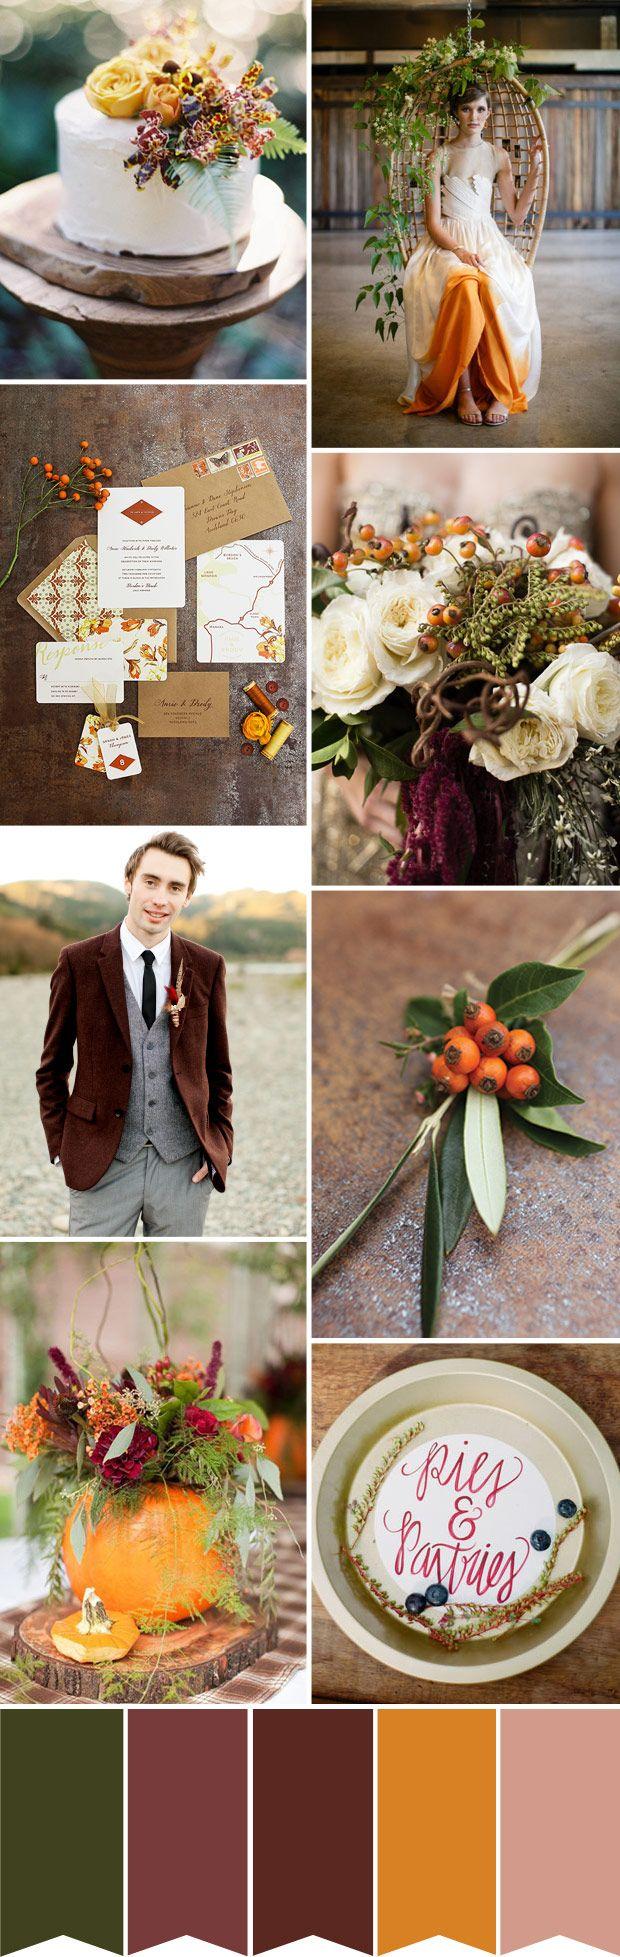 زفاف - الدفء الخريفي - خريف الزفاف اللون لوحة